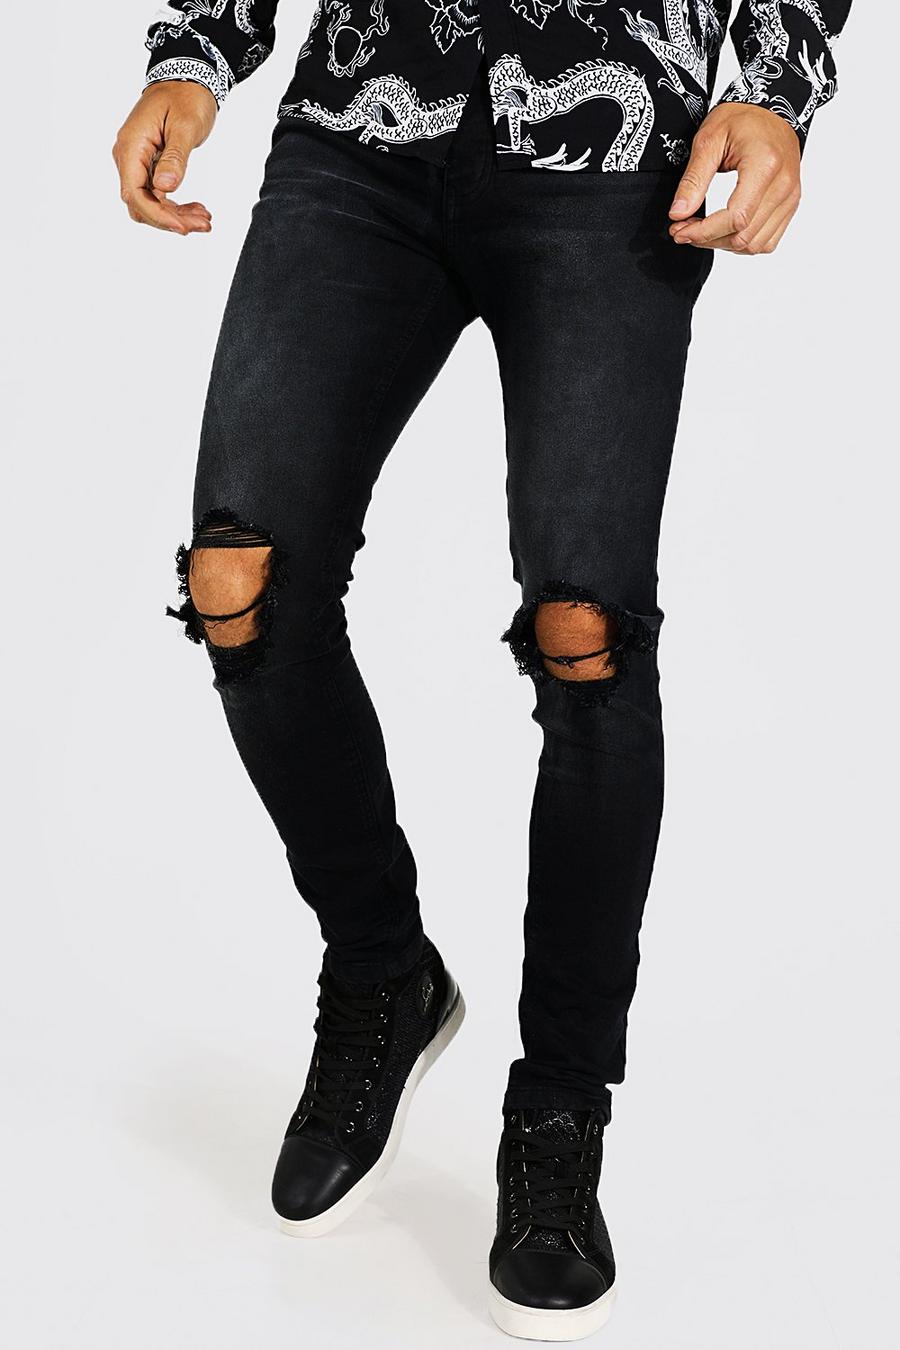 שחור דהוי ג'ינס סקיני עם קרעים בשתי הברכיים, לגברים גבוהים image number 1